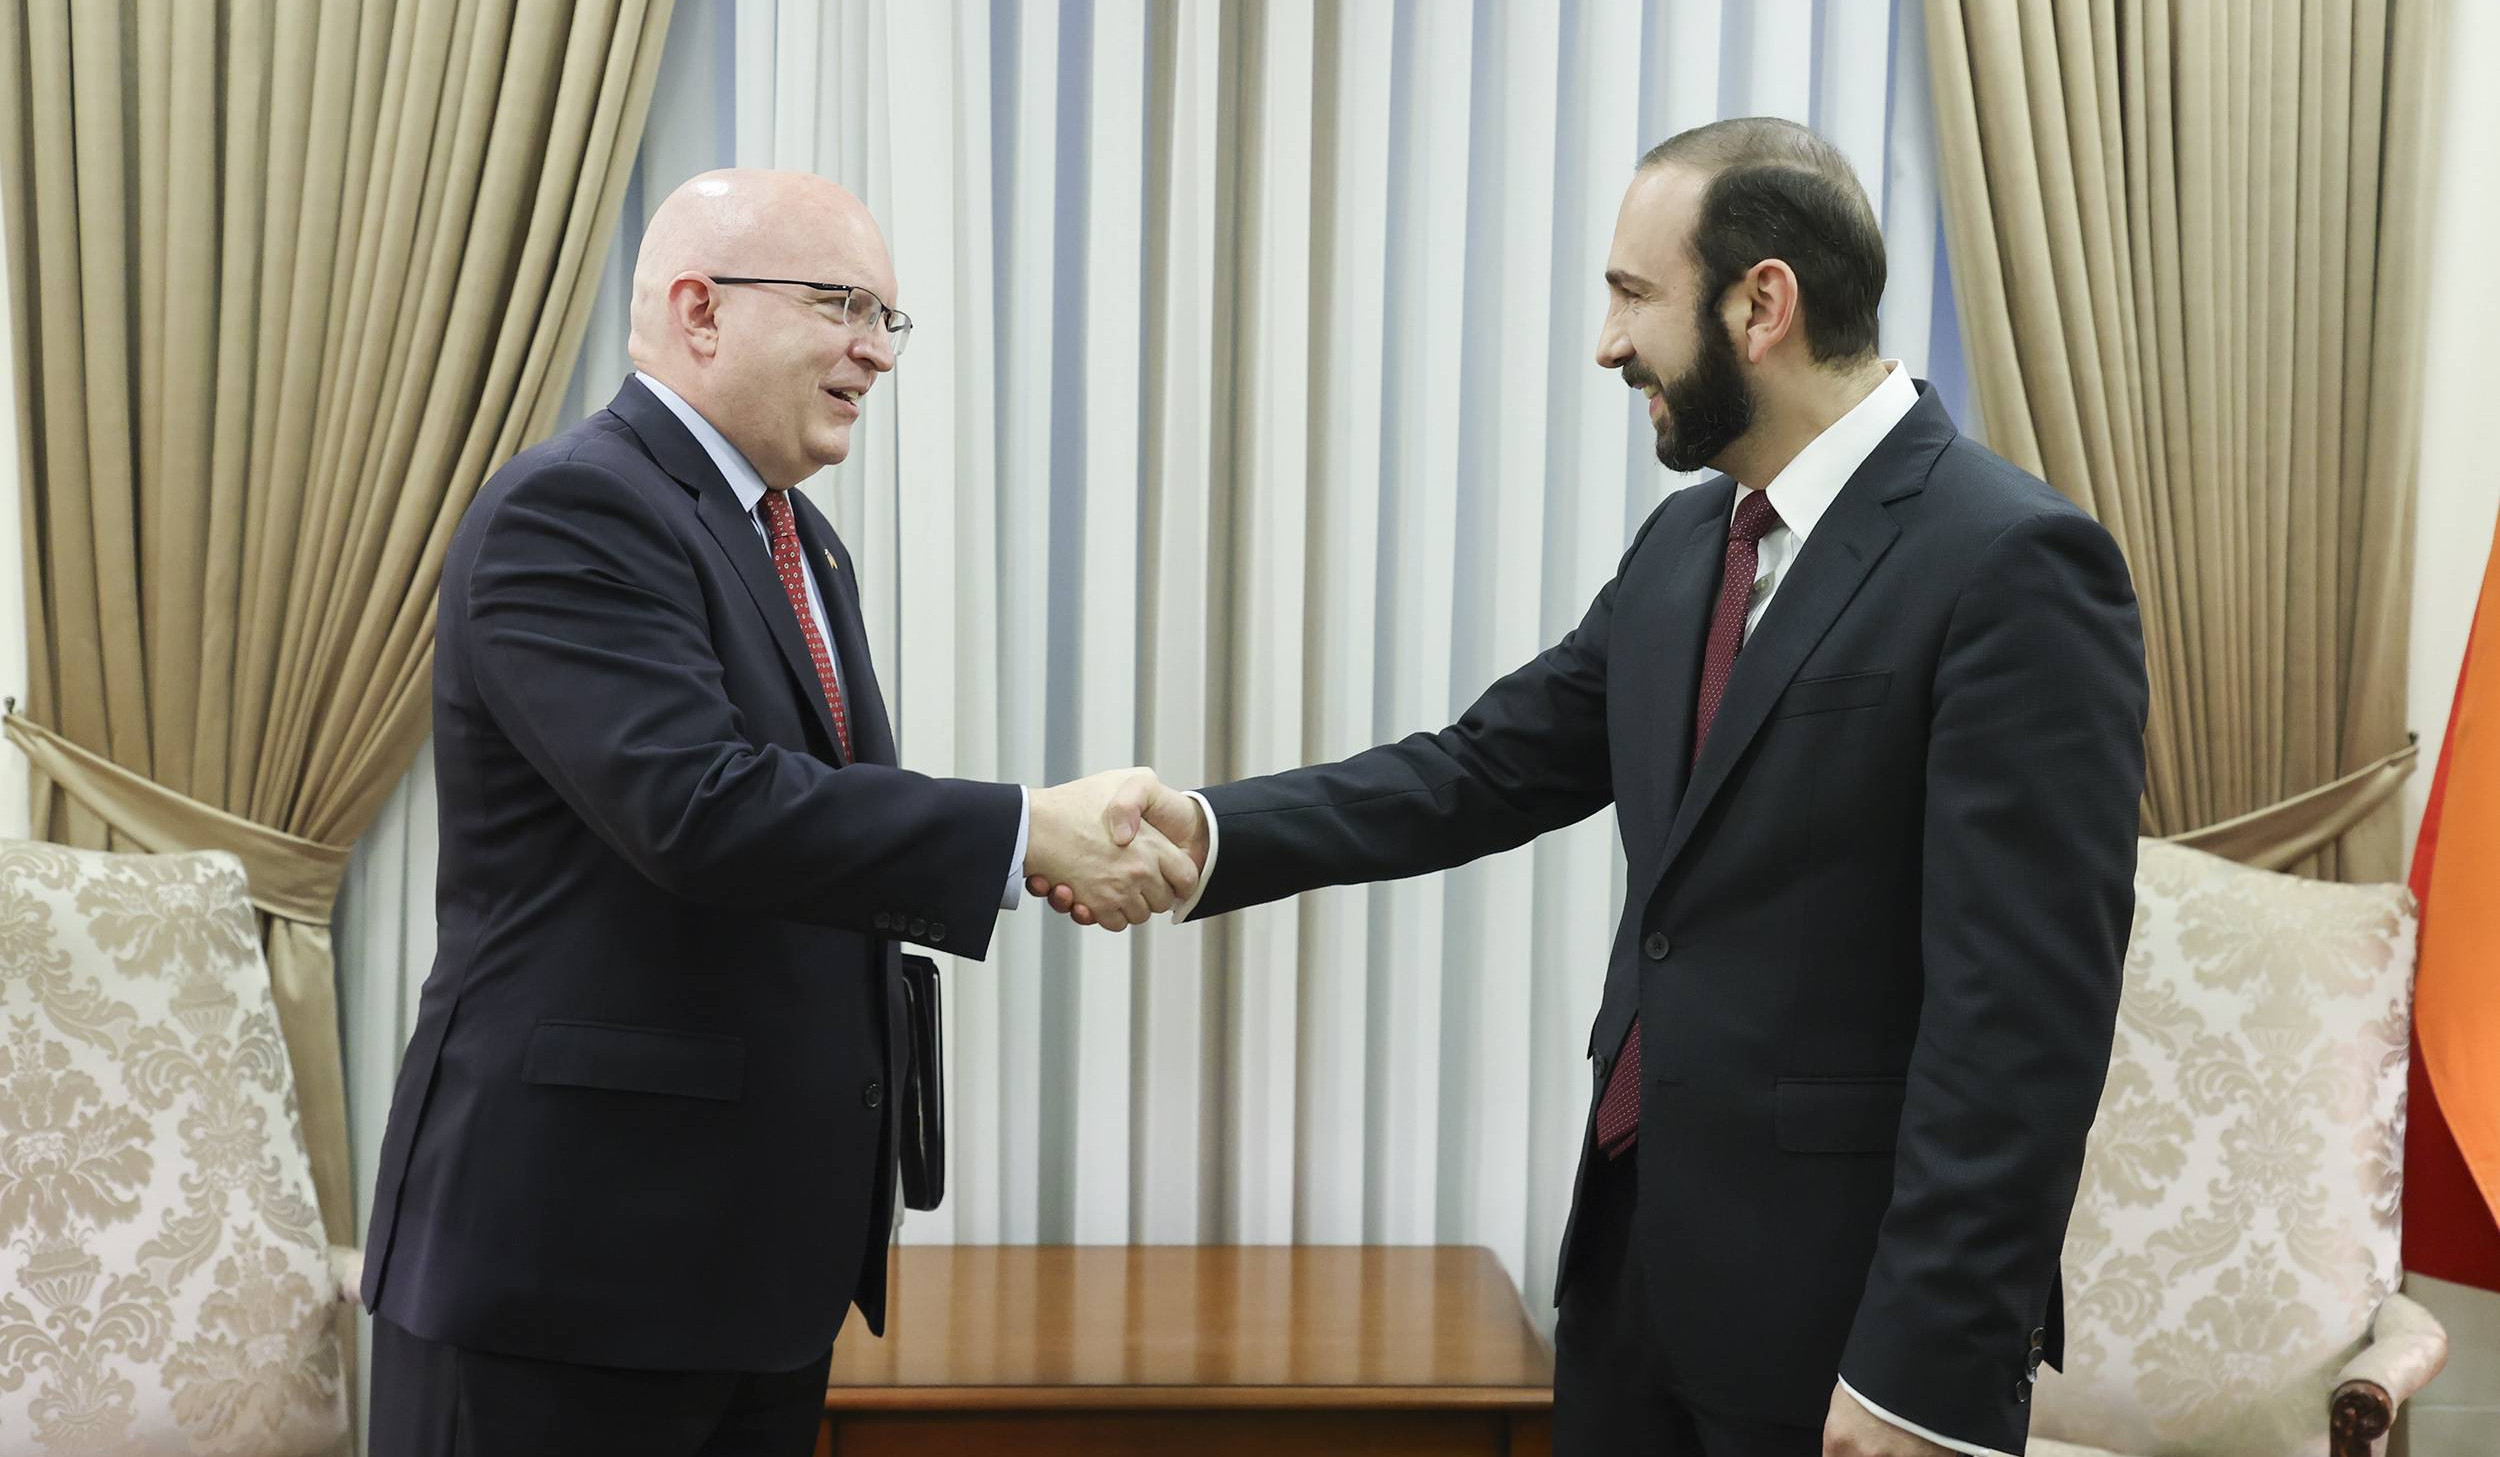 Арарат Мирзоян и Филипп Рикер обсудили последние события, связанные с урегулированием отношений между Арменией и Азербайджаном, нагорно-карабахской проблемой